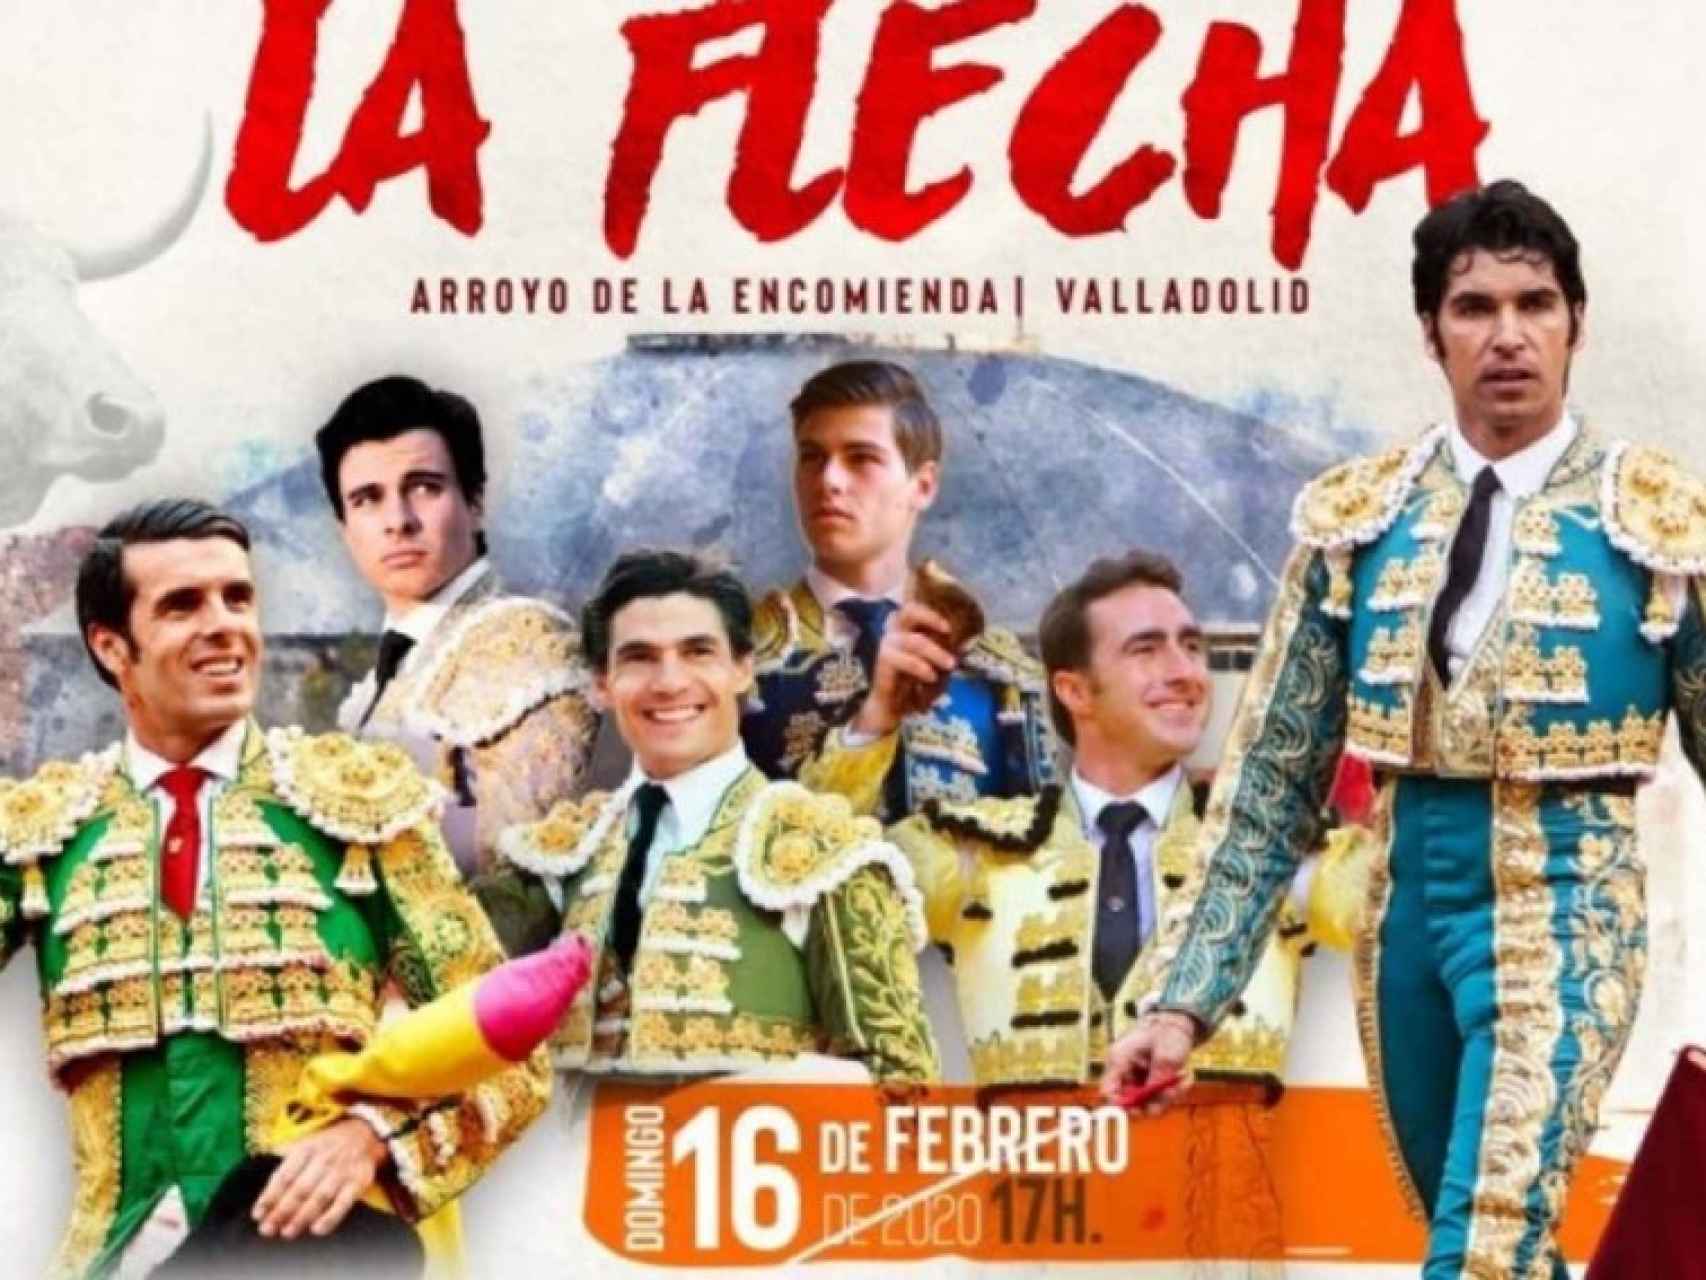 Cartel anunciador del último festival taurino (2020)  en el coso cubierto de La Flecha